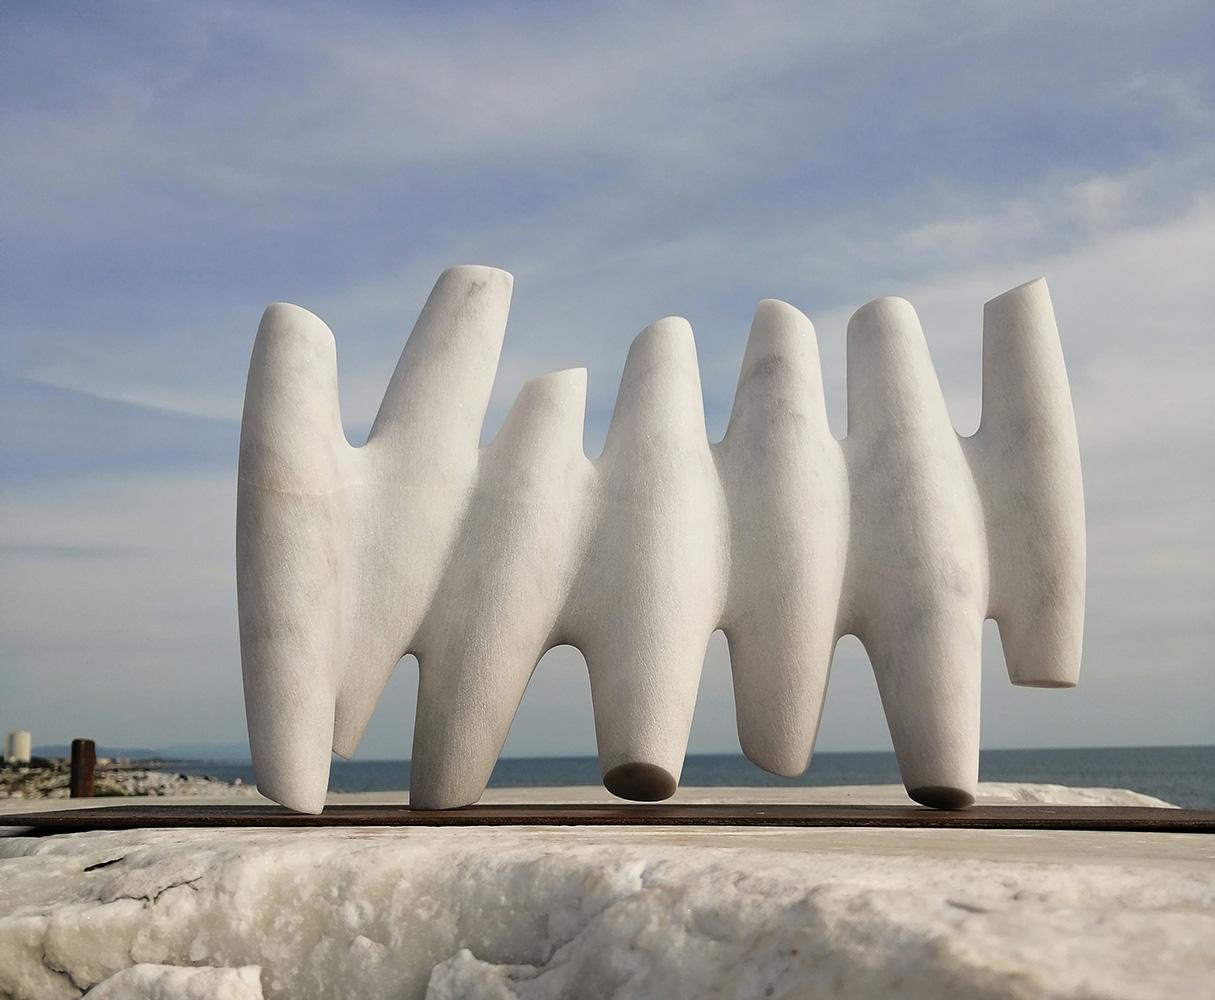 First Connections ist eine einzigartige Skulptur aus weißem Carrara-Marmor der zeitgenössischen Künstlerin Francesca Bernardini mit den Maßen 24 × 40 × 10 cm (9,4 × 15,7 × 3,9 in). Die Skulptur wird mit einer Stange auf dem Eisensockel gehalten, ist